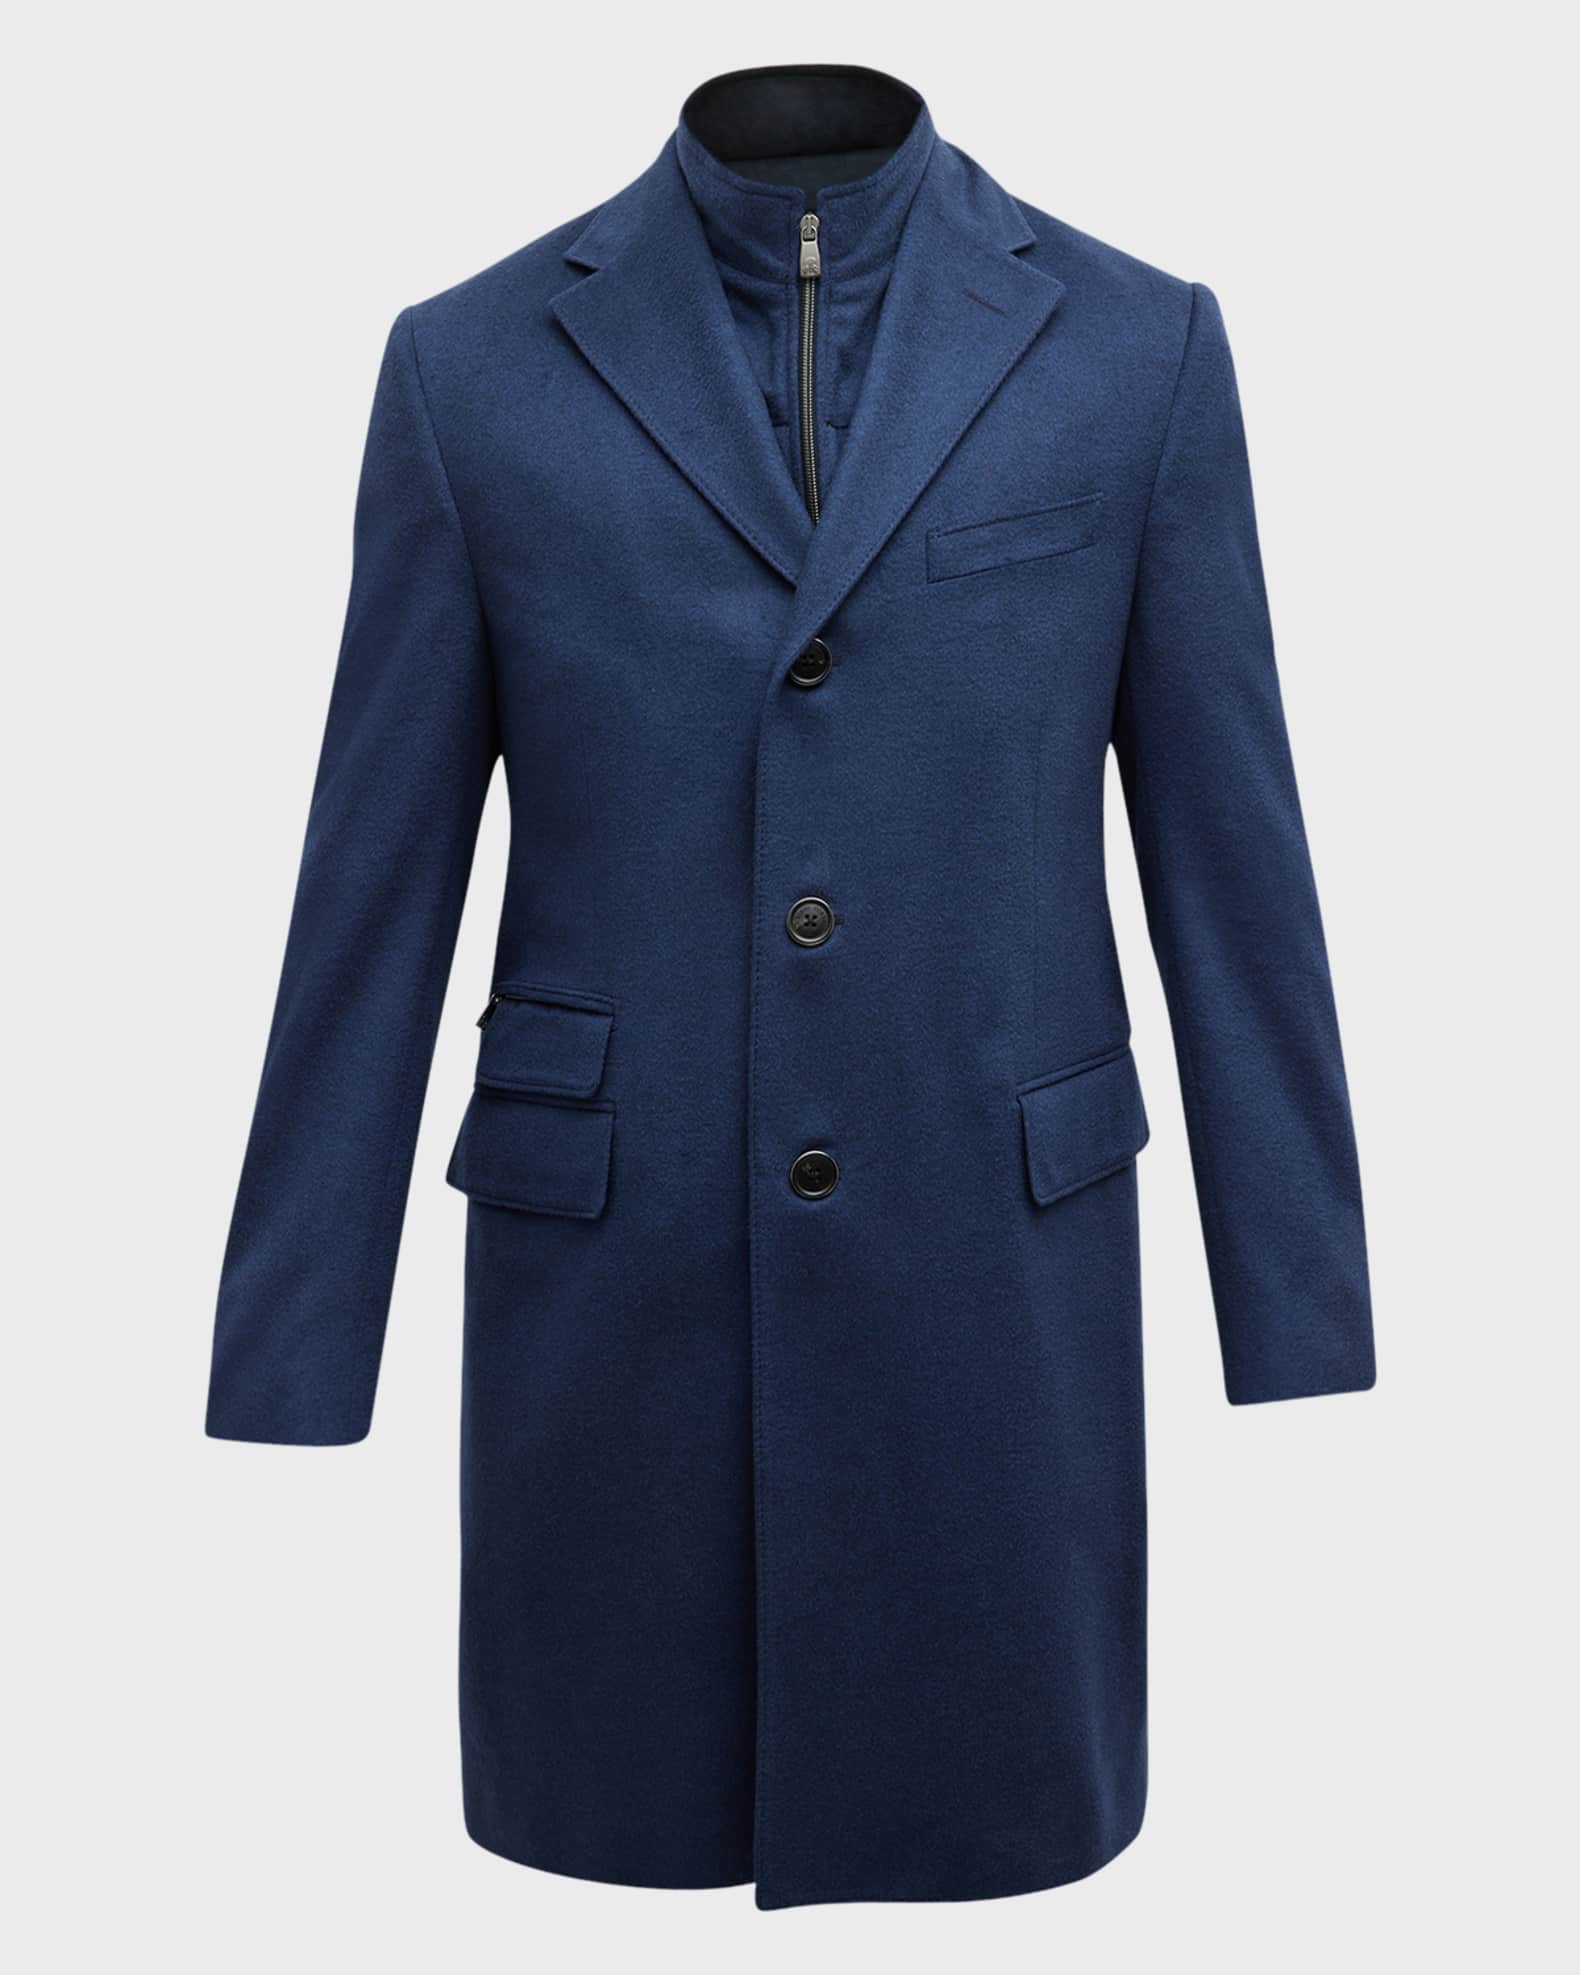 Corneliani Men's Solid Wool Topcoat with Liner | Neiman Marcus